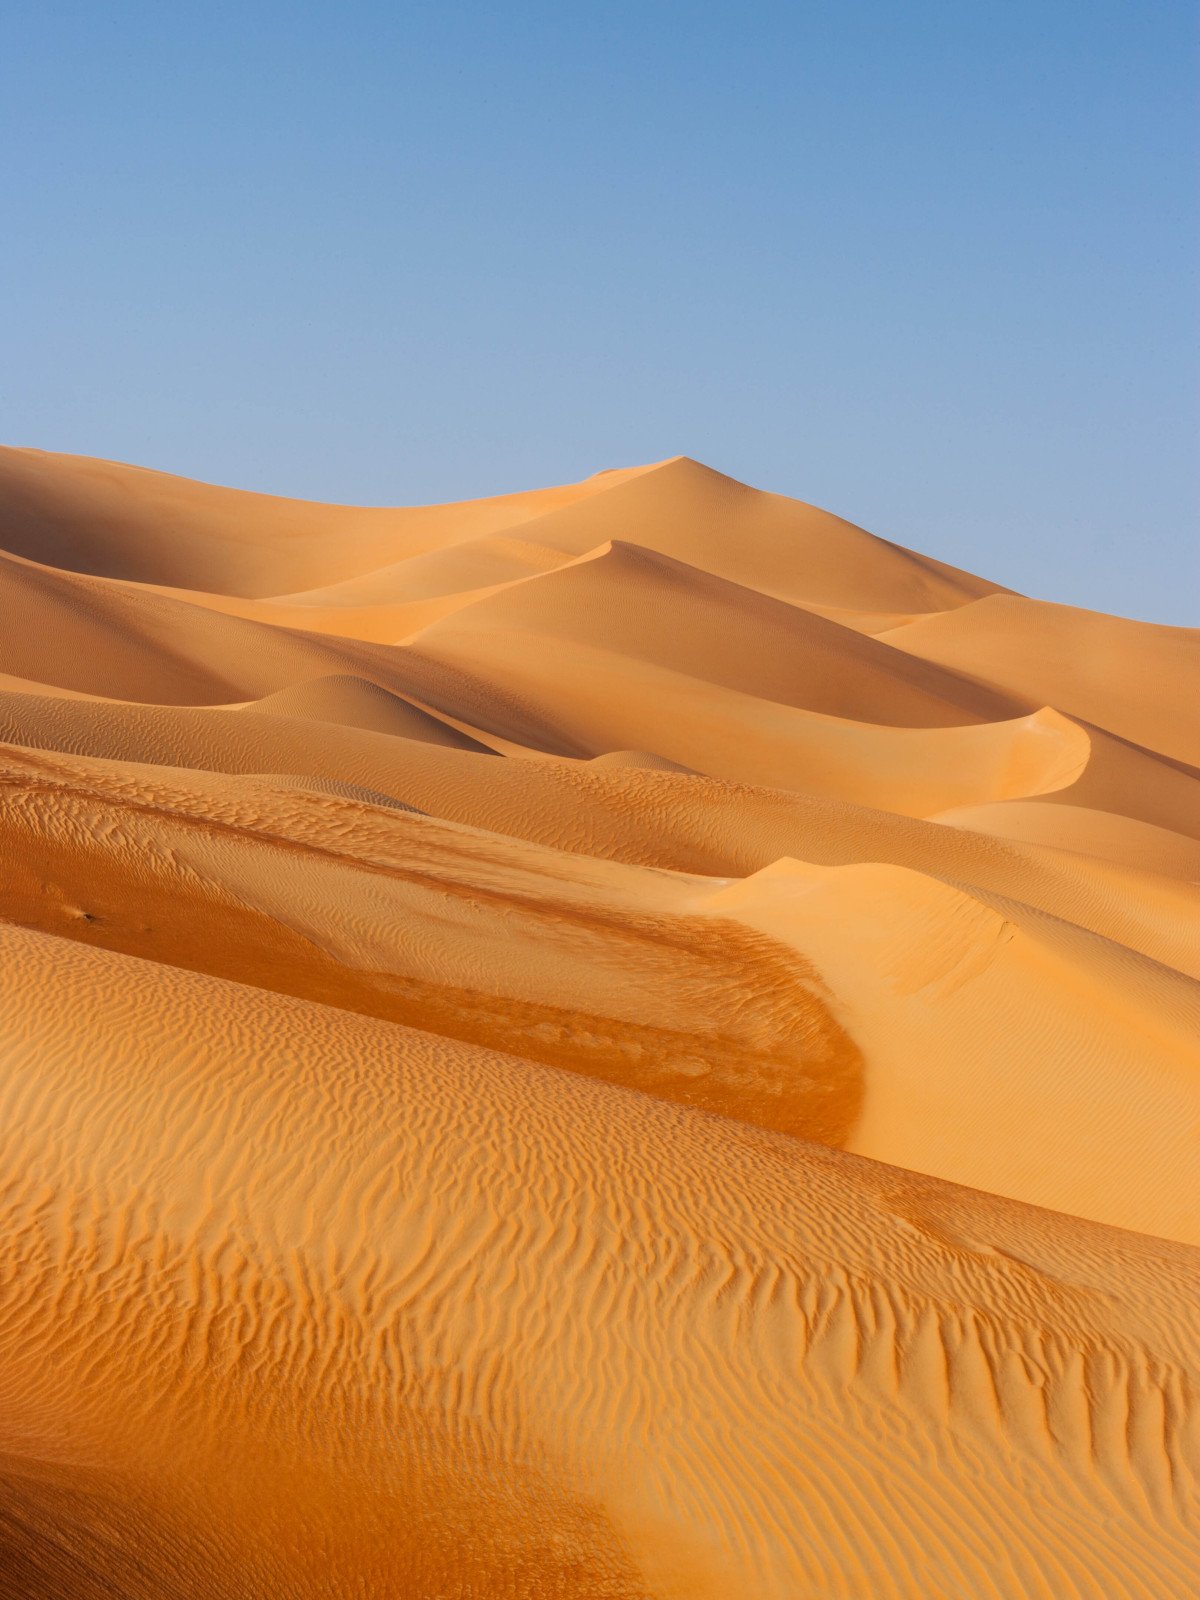 Woestijn - Midden-Oosten reizen